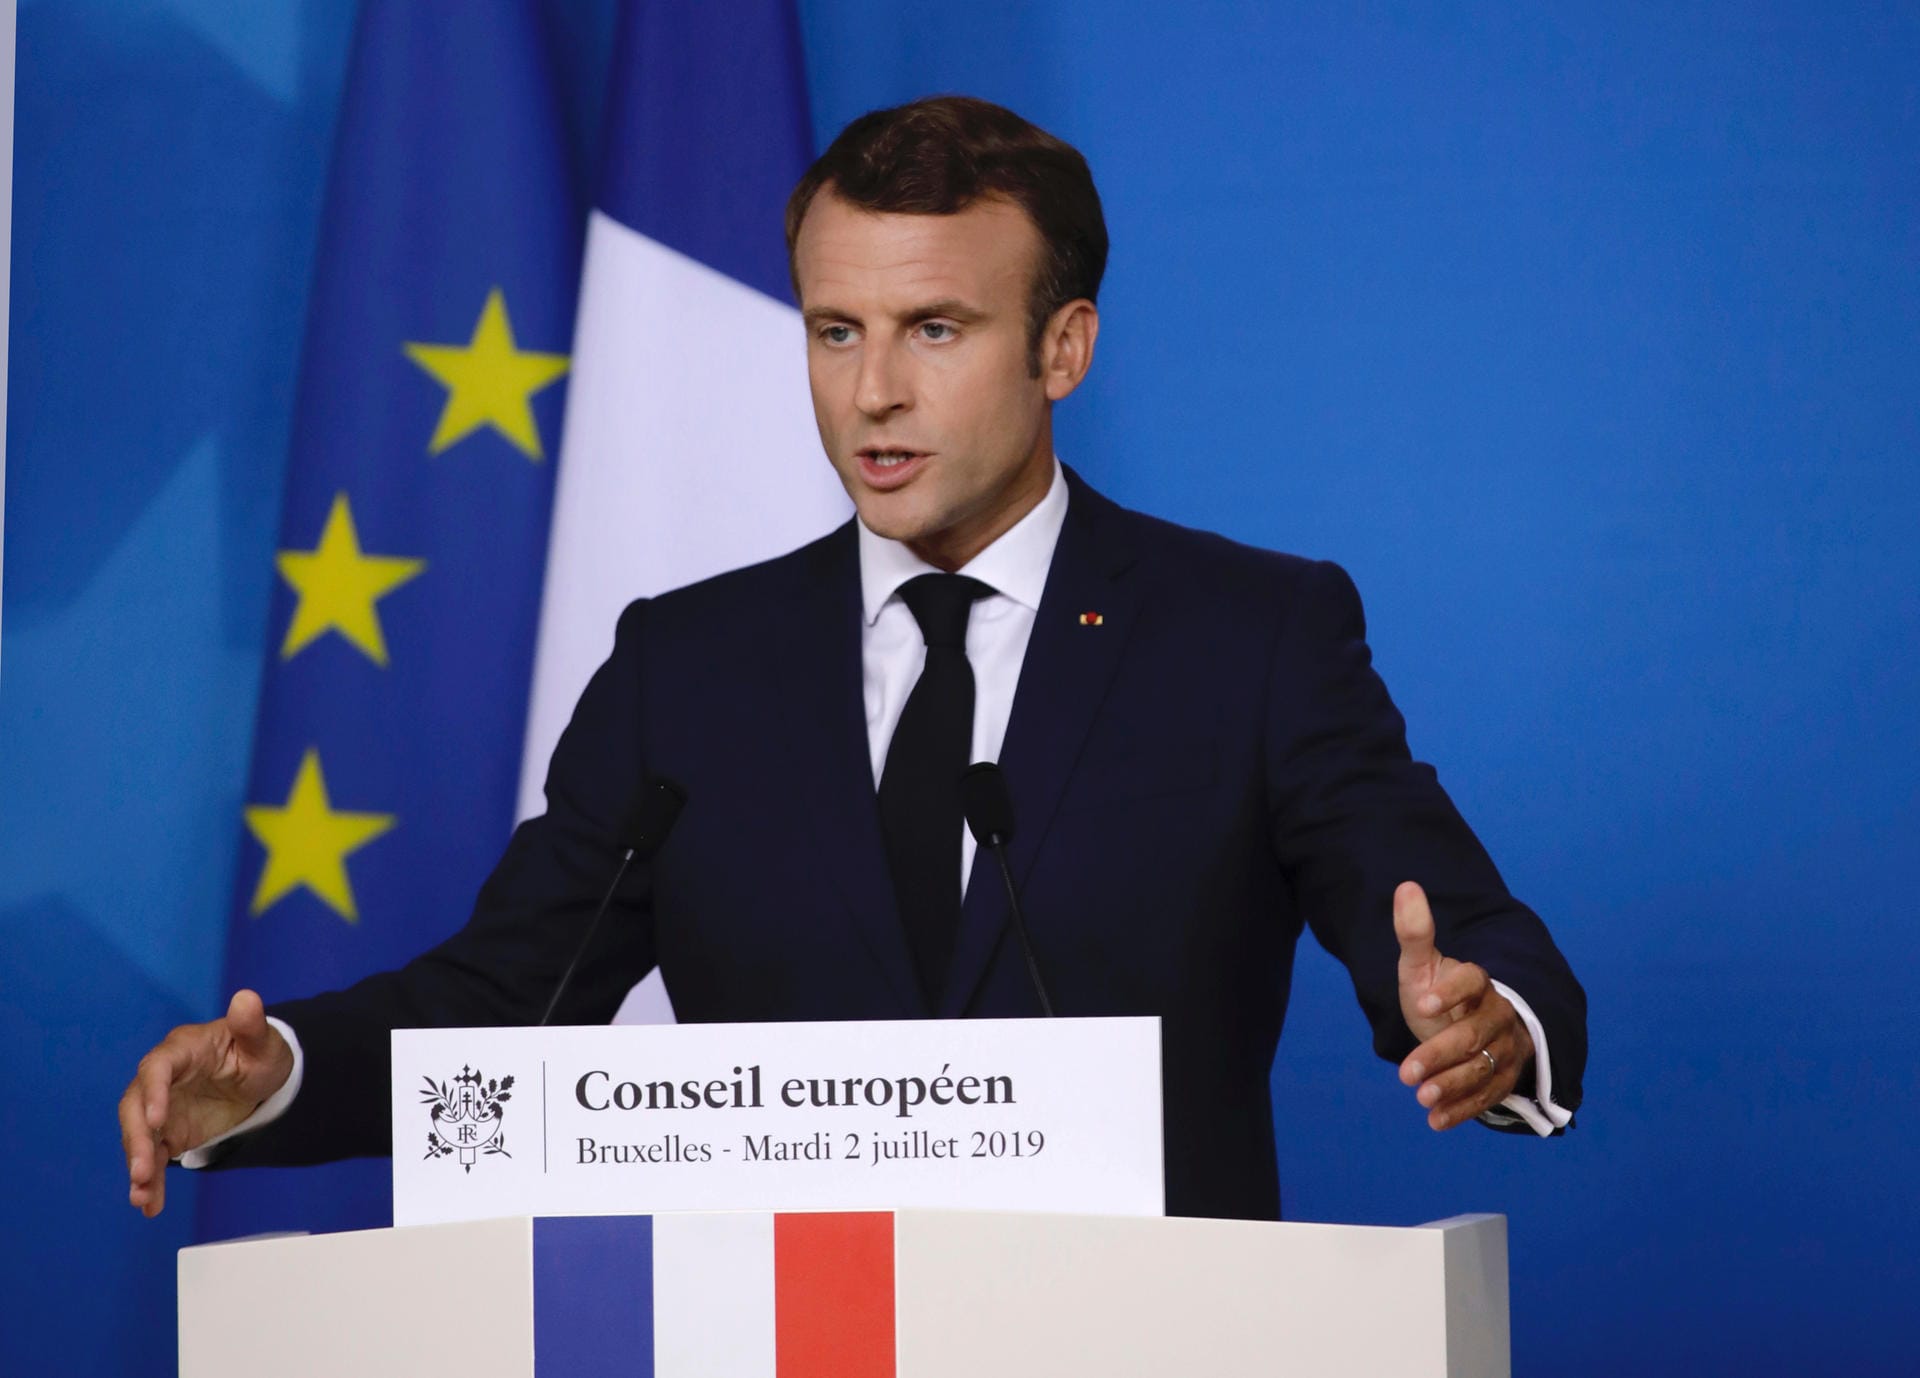 Frankreichs Emmanuel Macron zur Nominierung von Ursula von der Leyen als EU-Kommissionschefin: "Das ist für mich eine sehr gute Kandidatur."